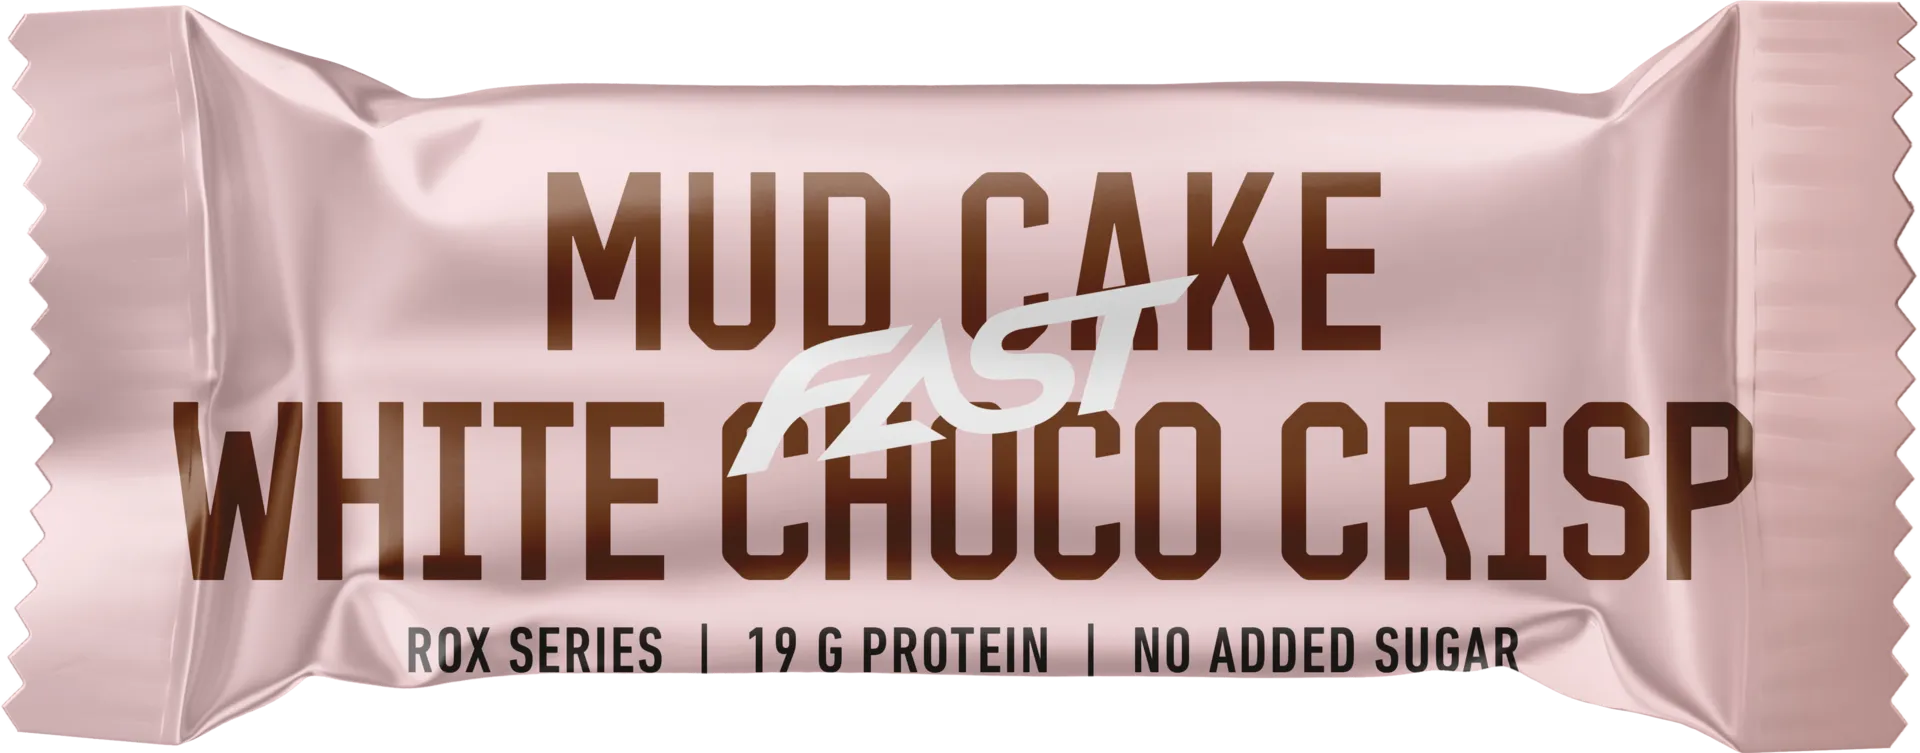 FAST ROX Mud Cake white choco crisp monikerroksellinen  55 g